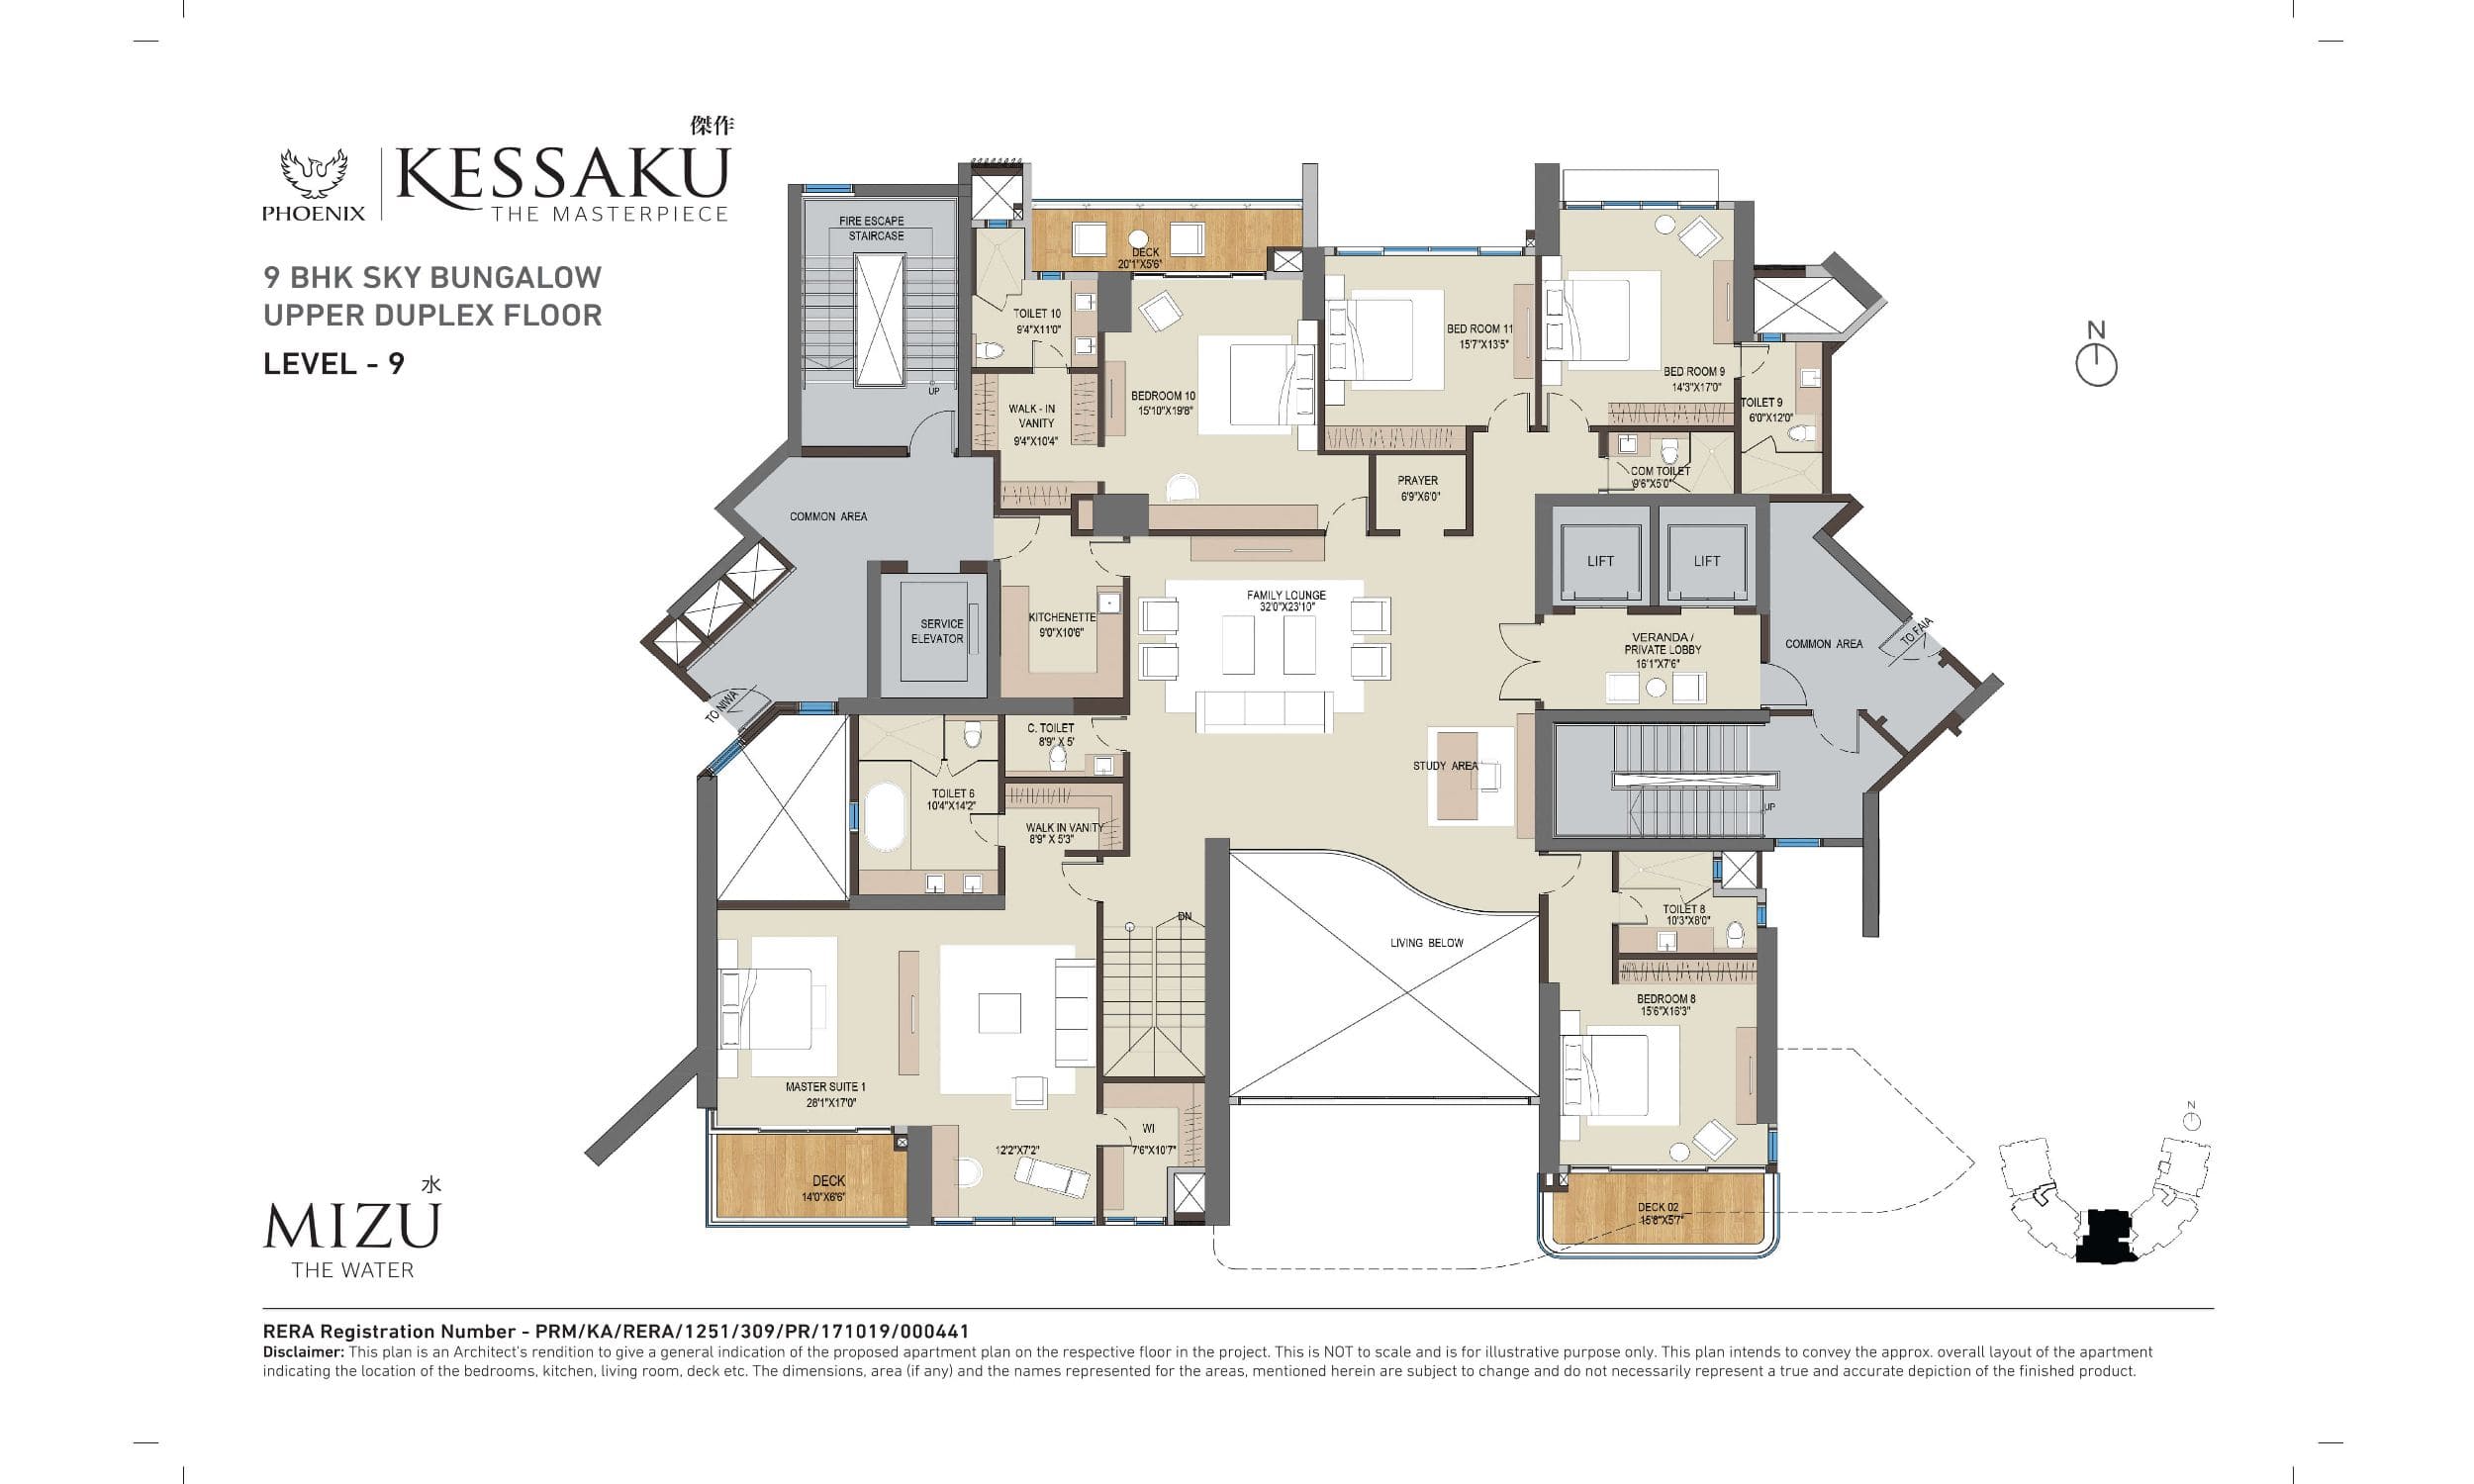 Phoenix Kessaku MIZU Floor Plans (8)